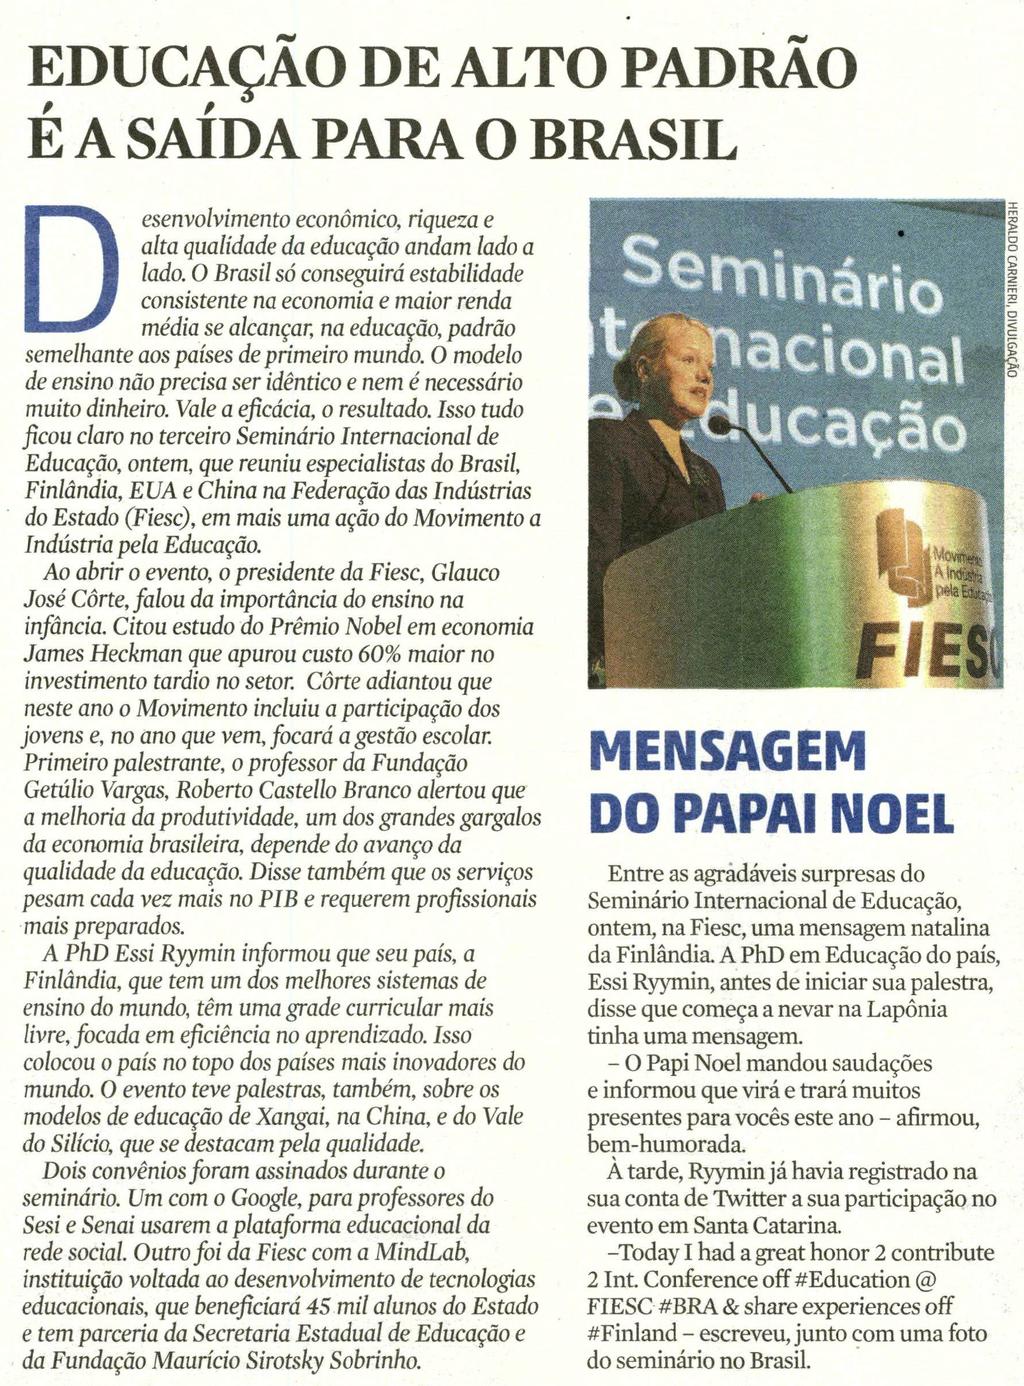 Título: Educação de alto padrão é a saída para o Brasil / Mensagem do papai noel - Data: 21/10/2015